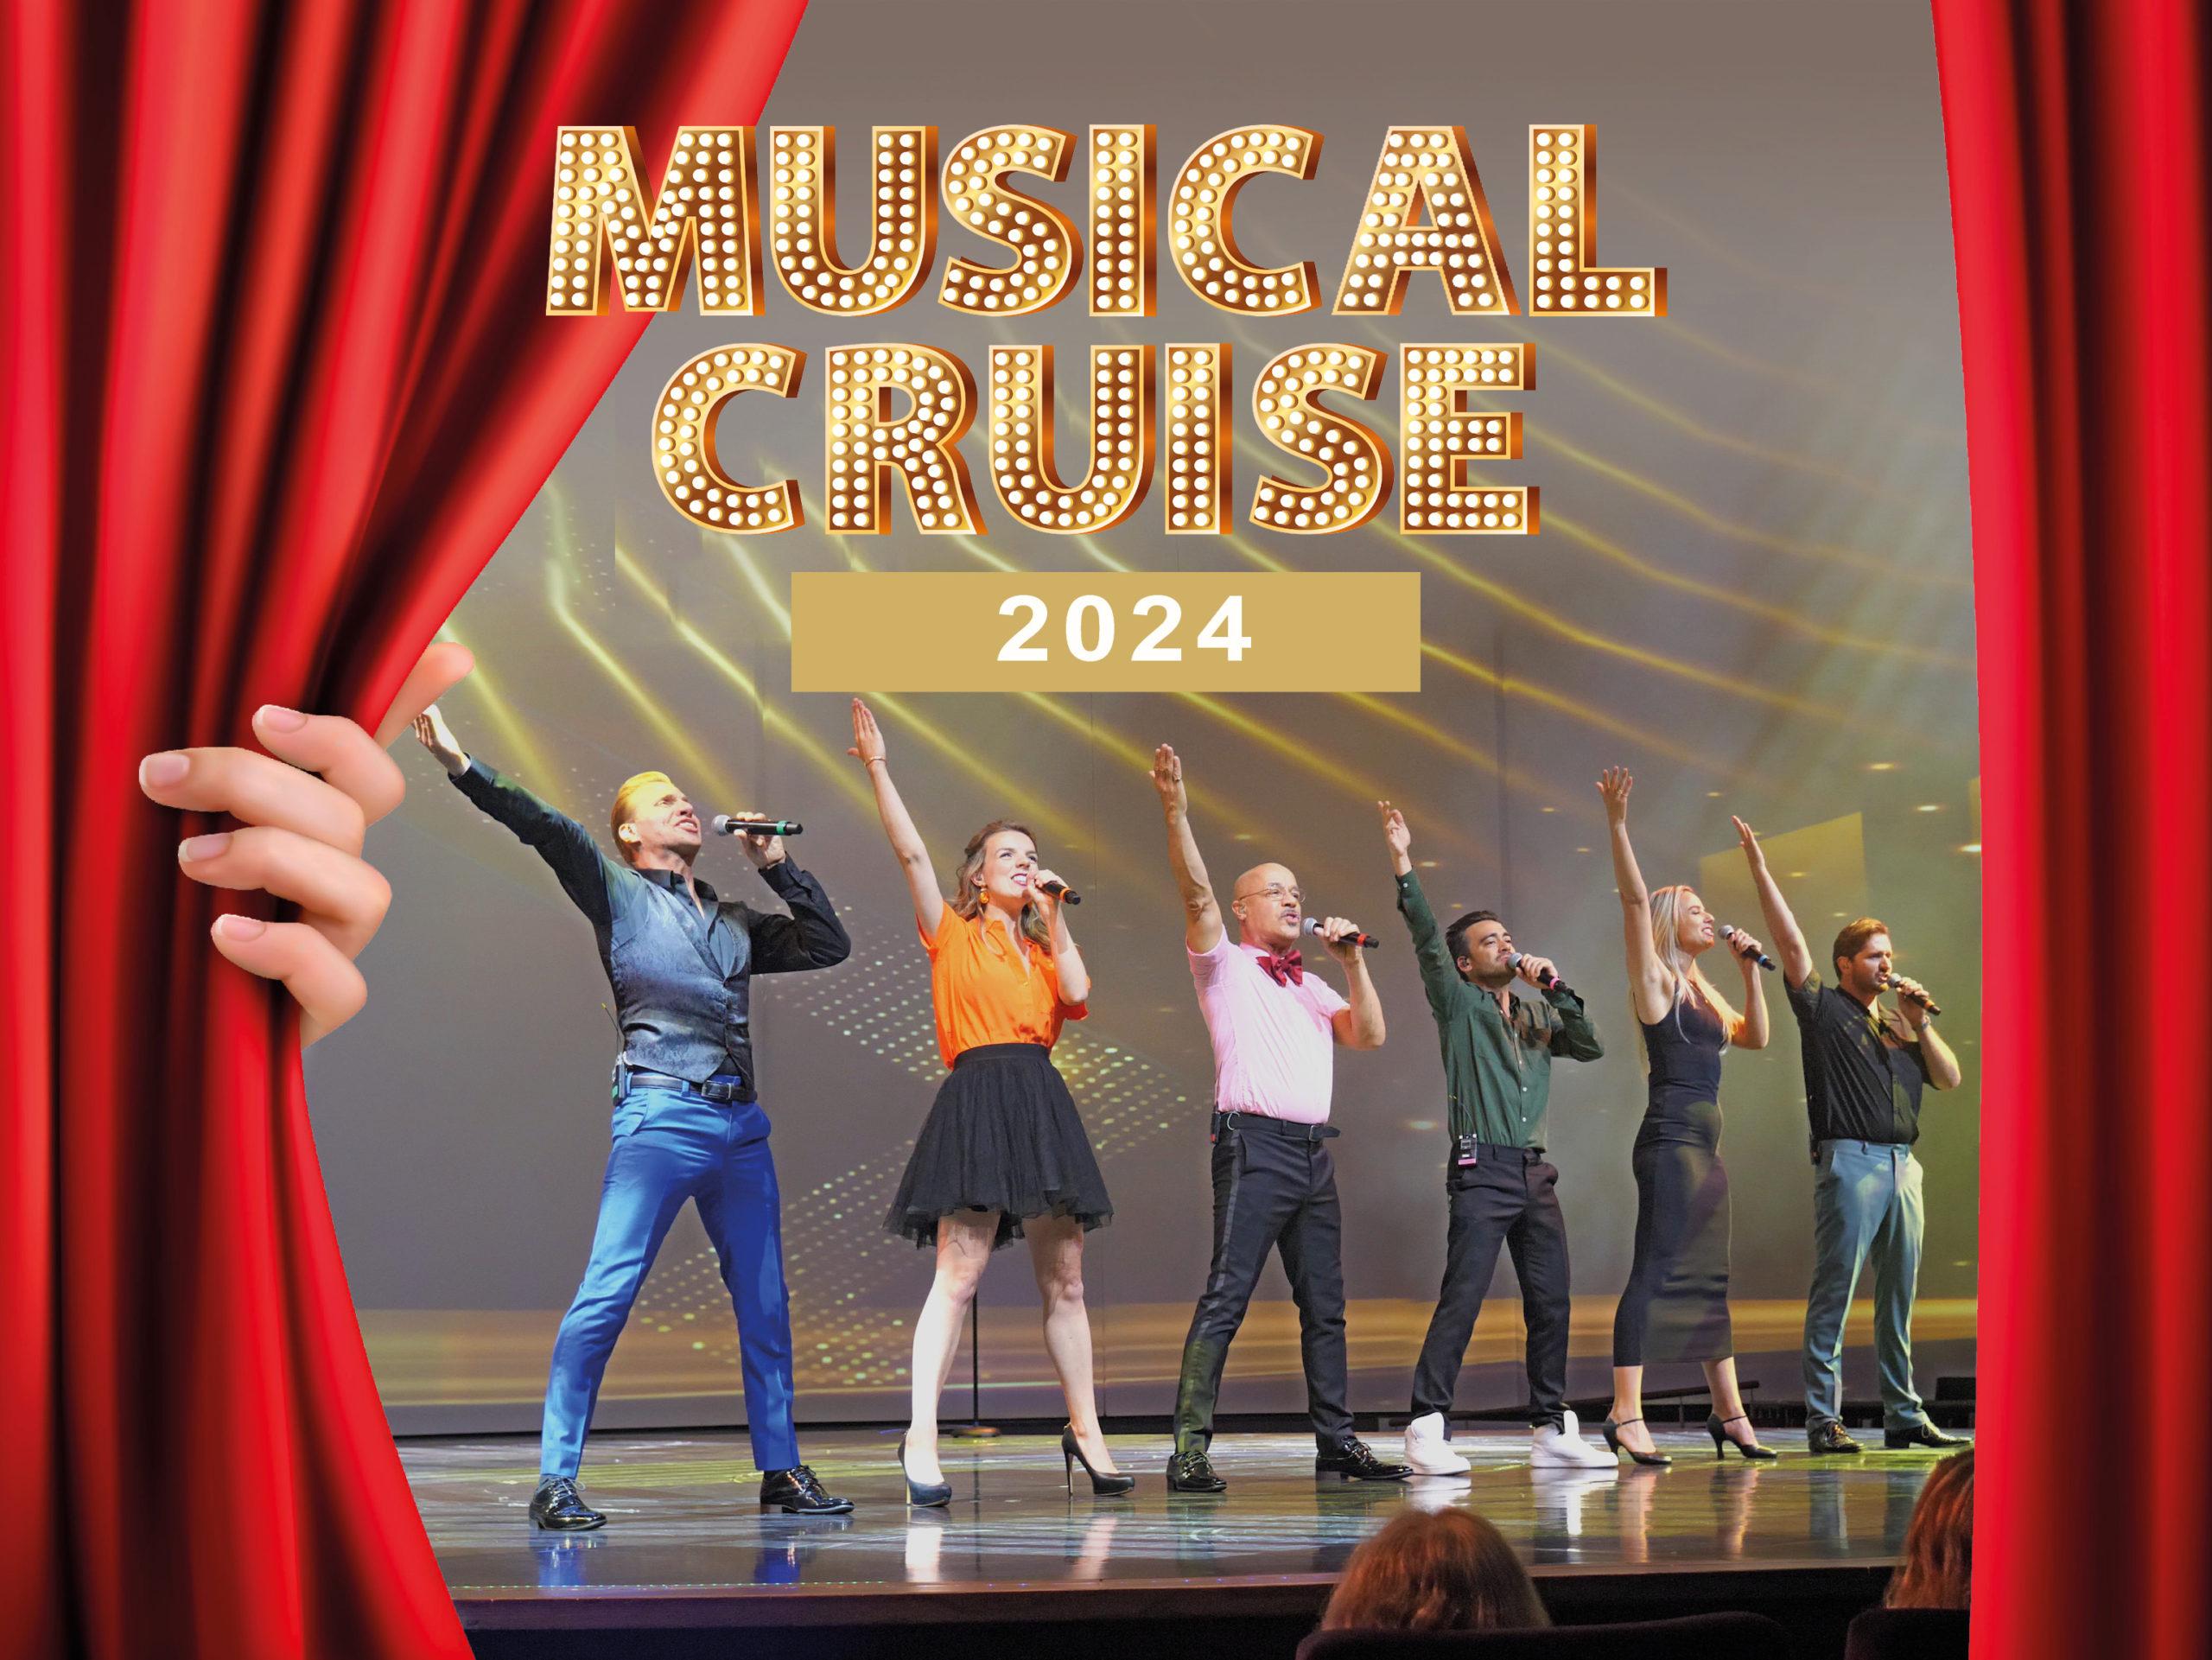 The Musical Cruise kommer tilbake i 2024 ·